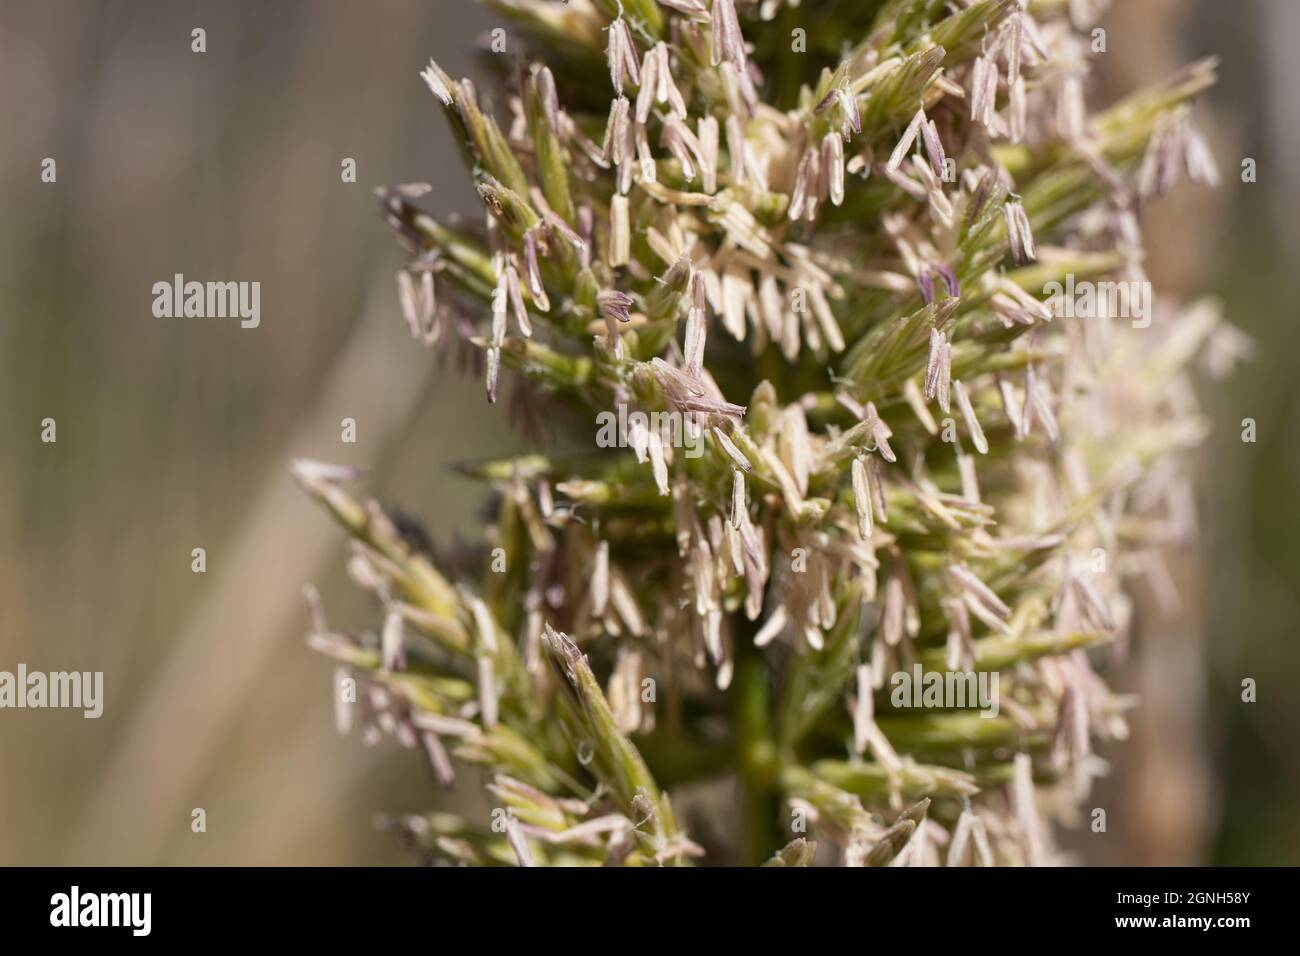 Inflorescencias de panículas blancas de la wildrye gigante, Elymus Condensatus, Poaceae, nativa en Solstice Canyon NPS, Santa Monica Mountains, Springtime. Foto de stock